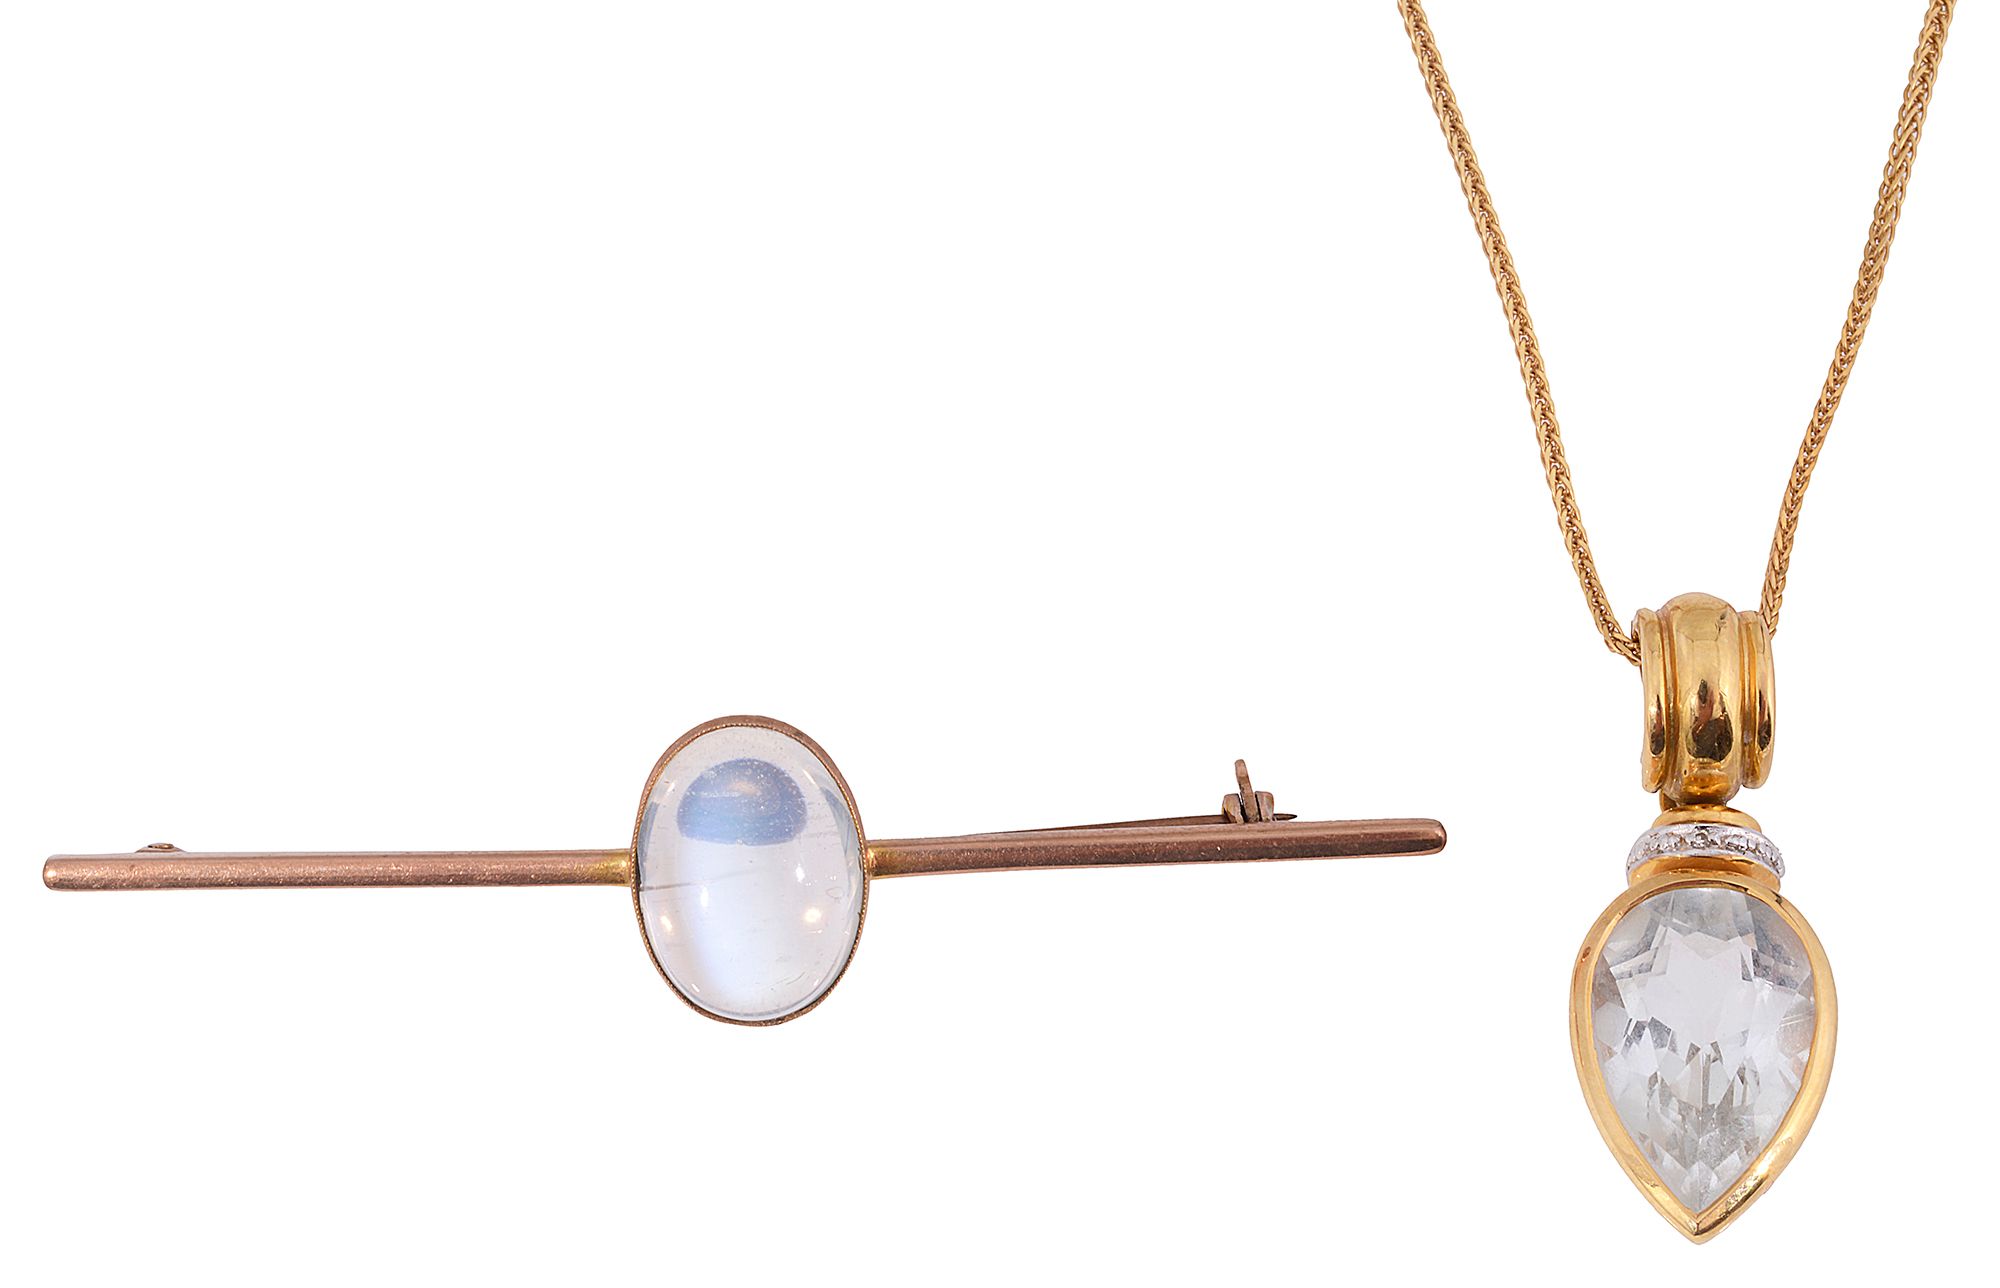 A gem set 18ct pendant necklace